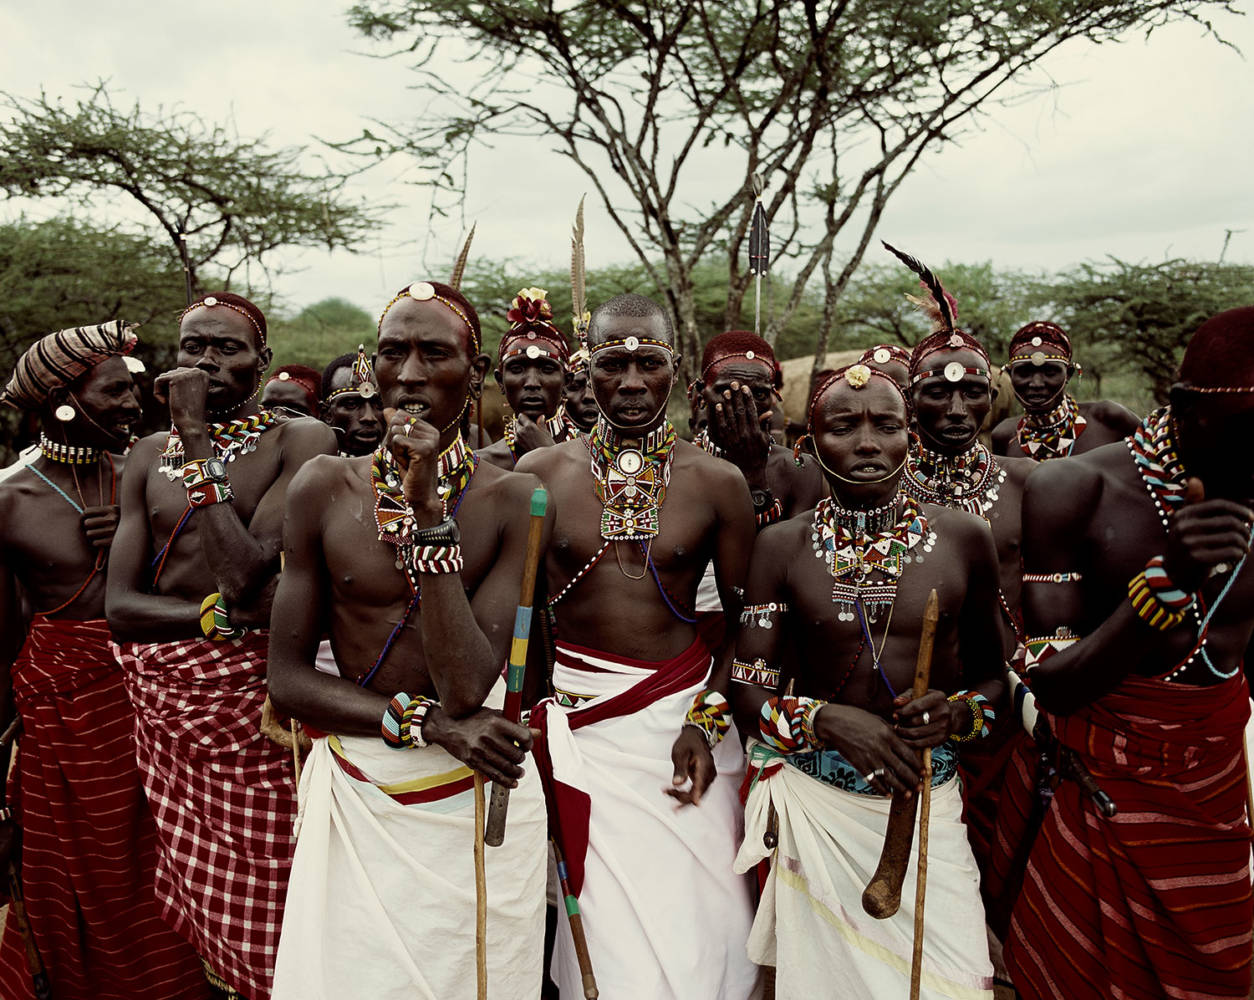 revistaprosaversoearte.com - As tribos isoladas da África na fotografia de Jimmy Nelson